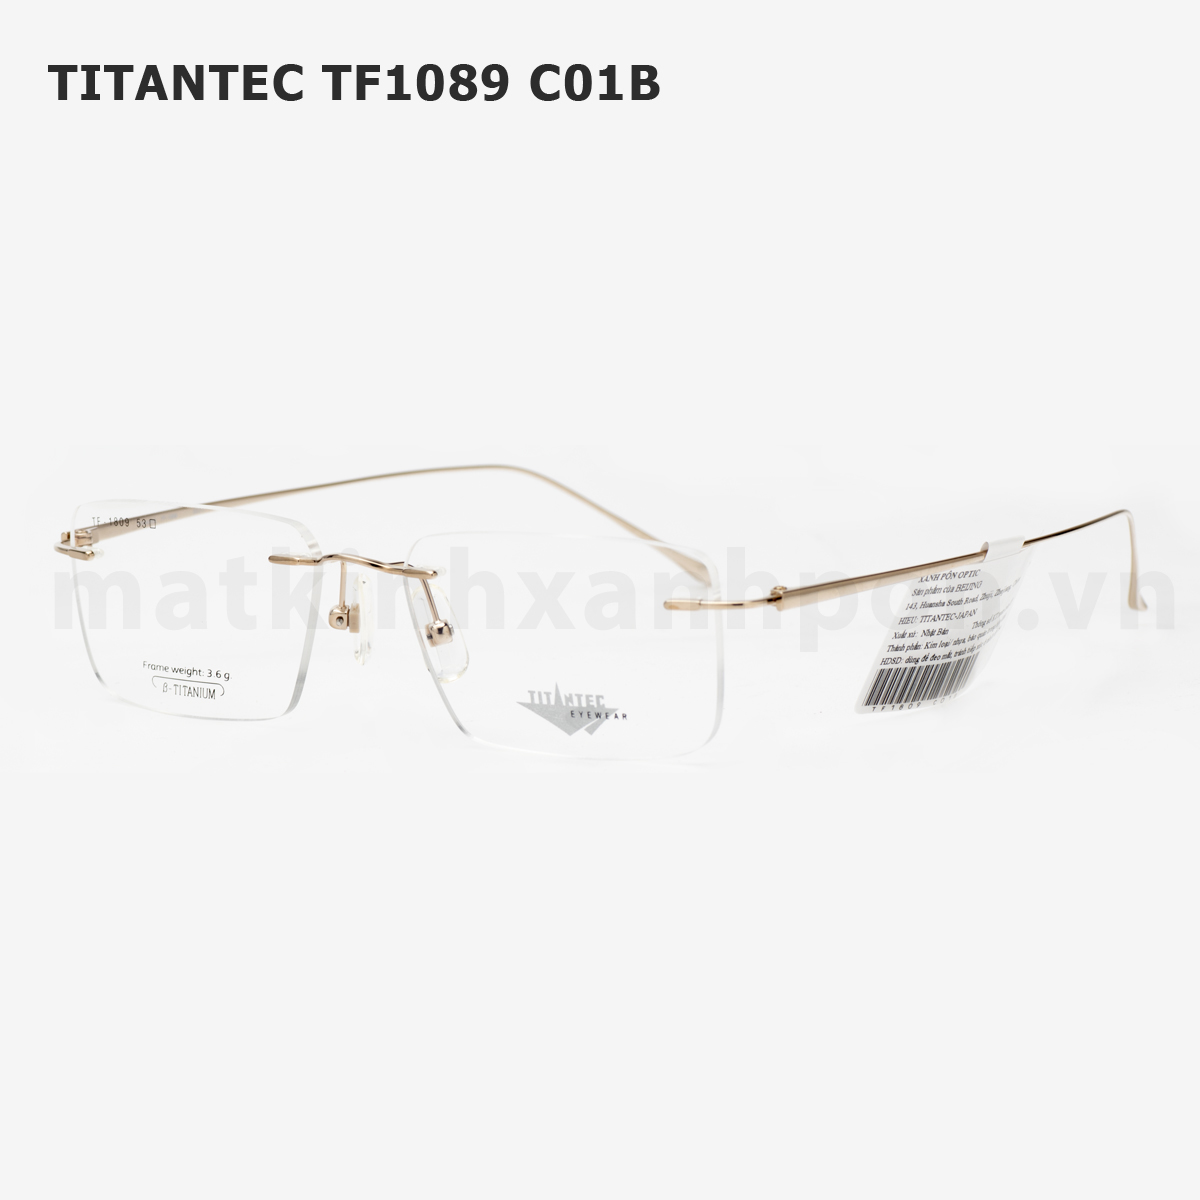 Titantec TF1089 C01B